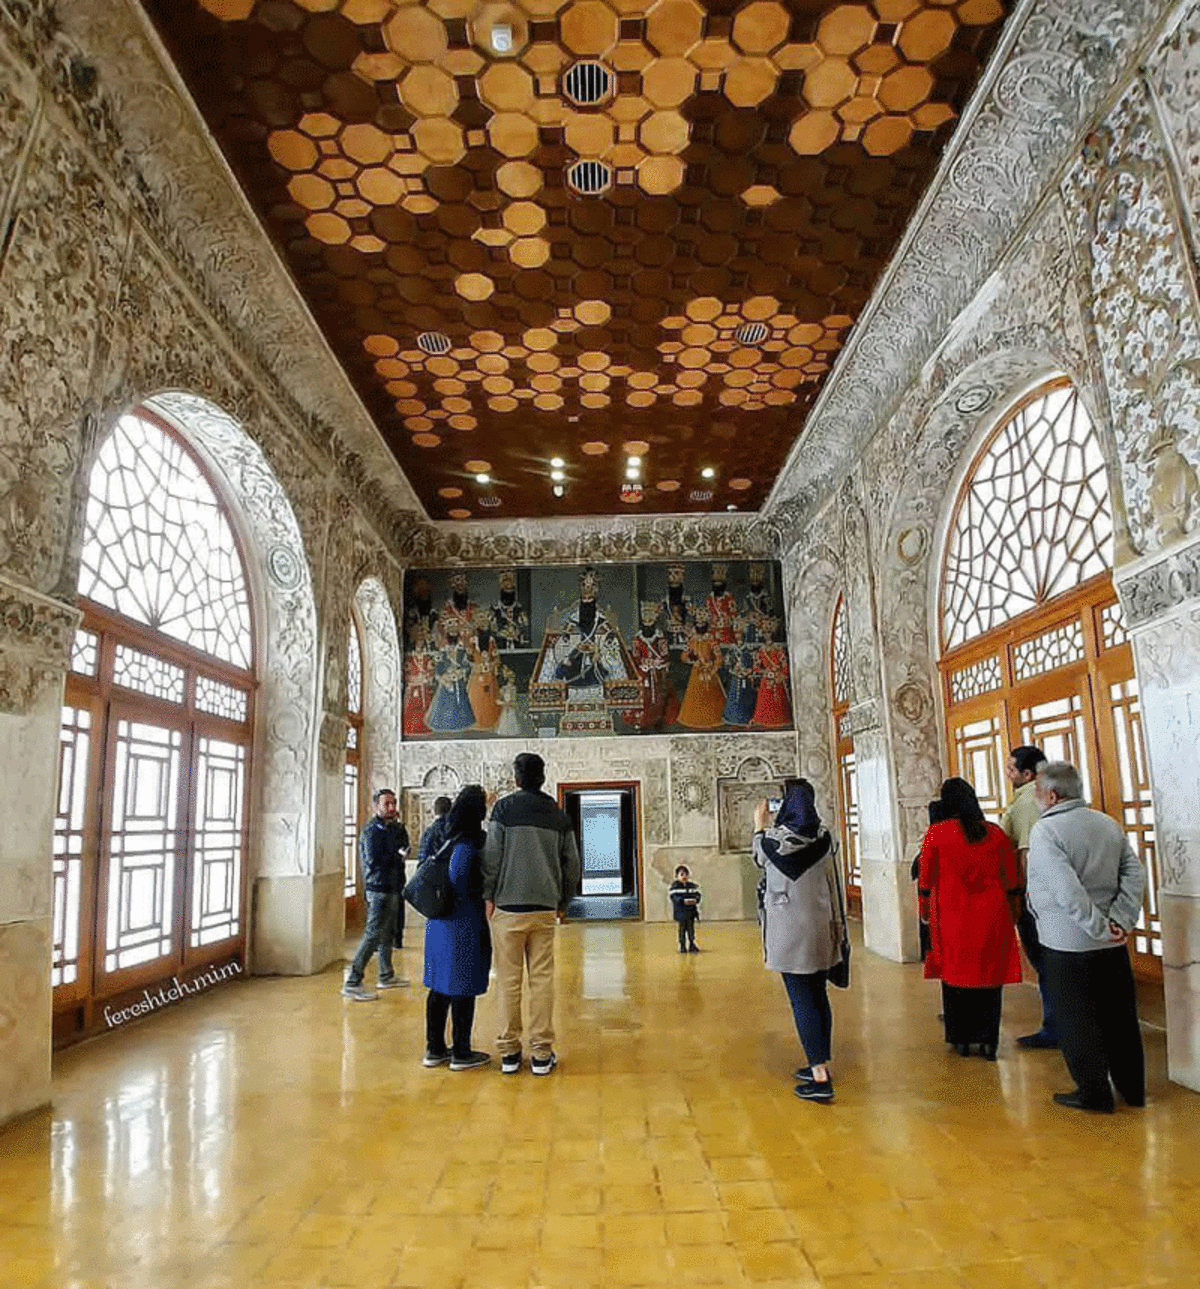 بازدید رایگان گردشگران و تورها از اماکن تاریخی البرز